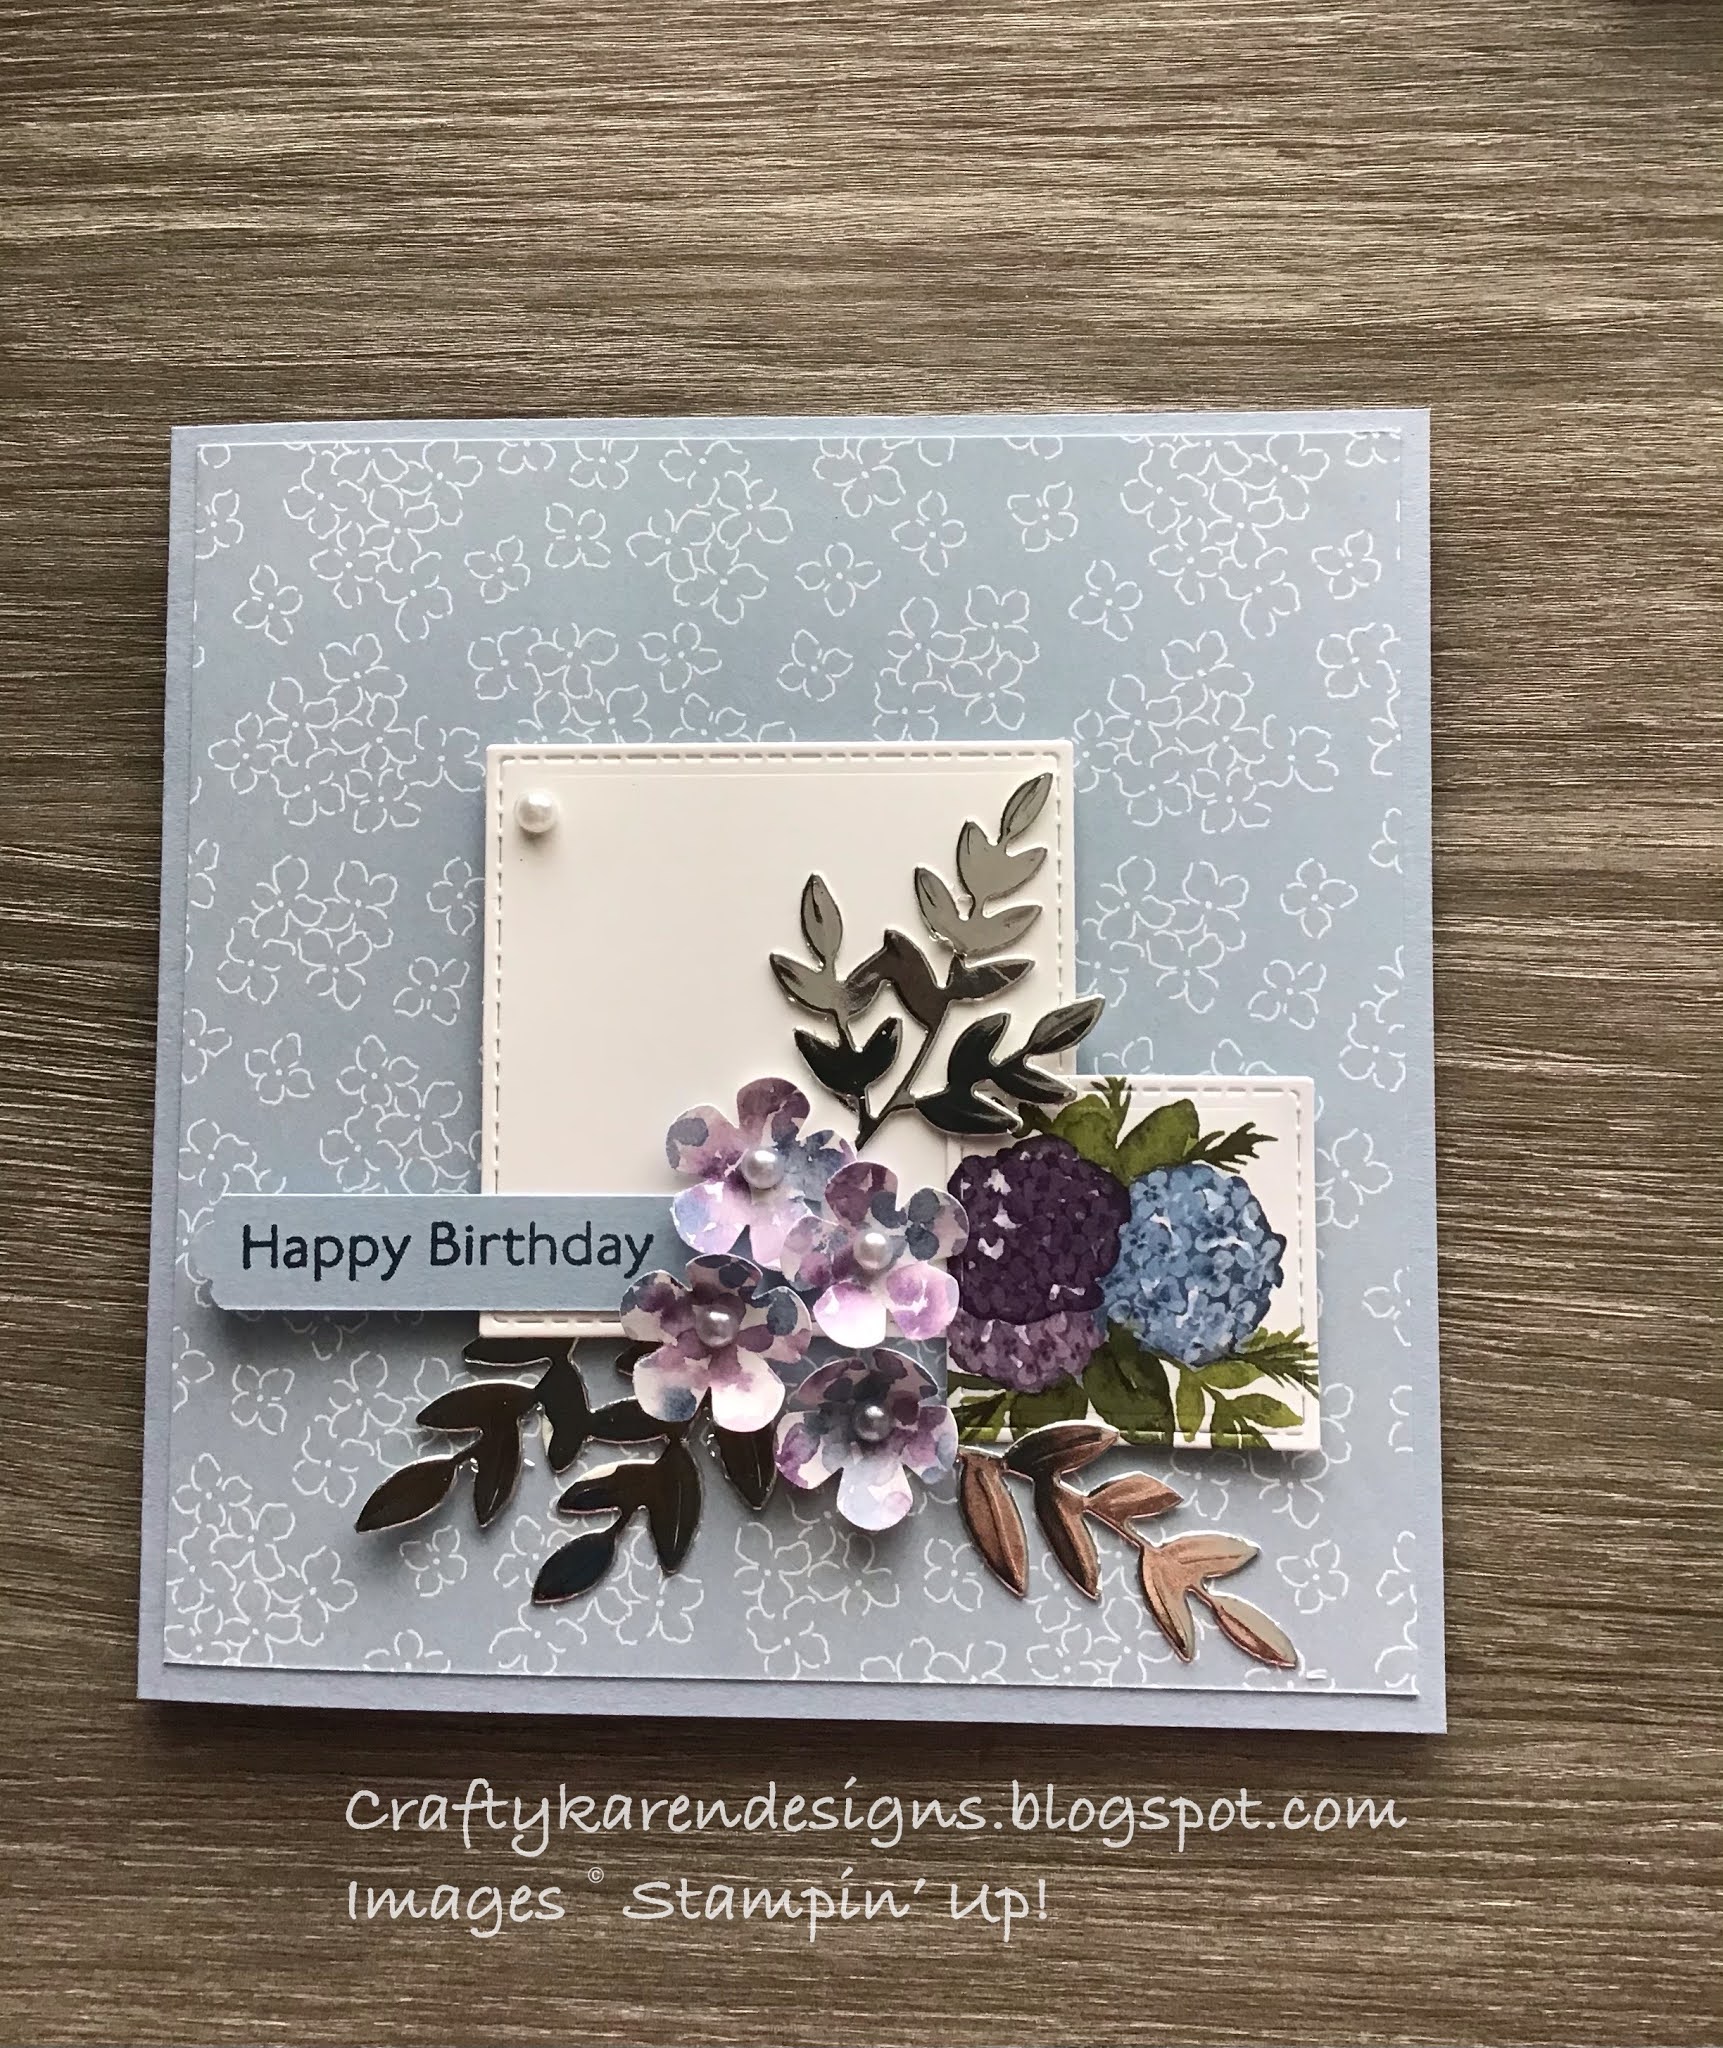 craftykarendesigns: Hydrangea Hill Birthday Card